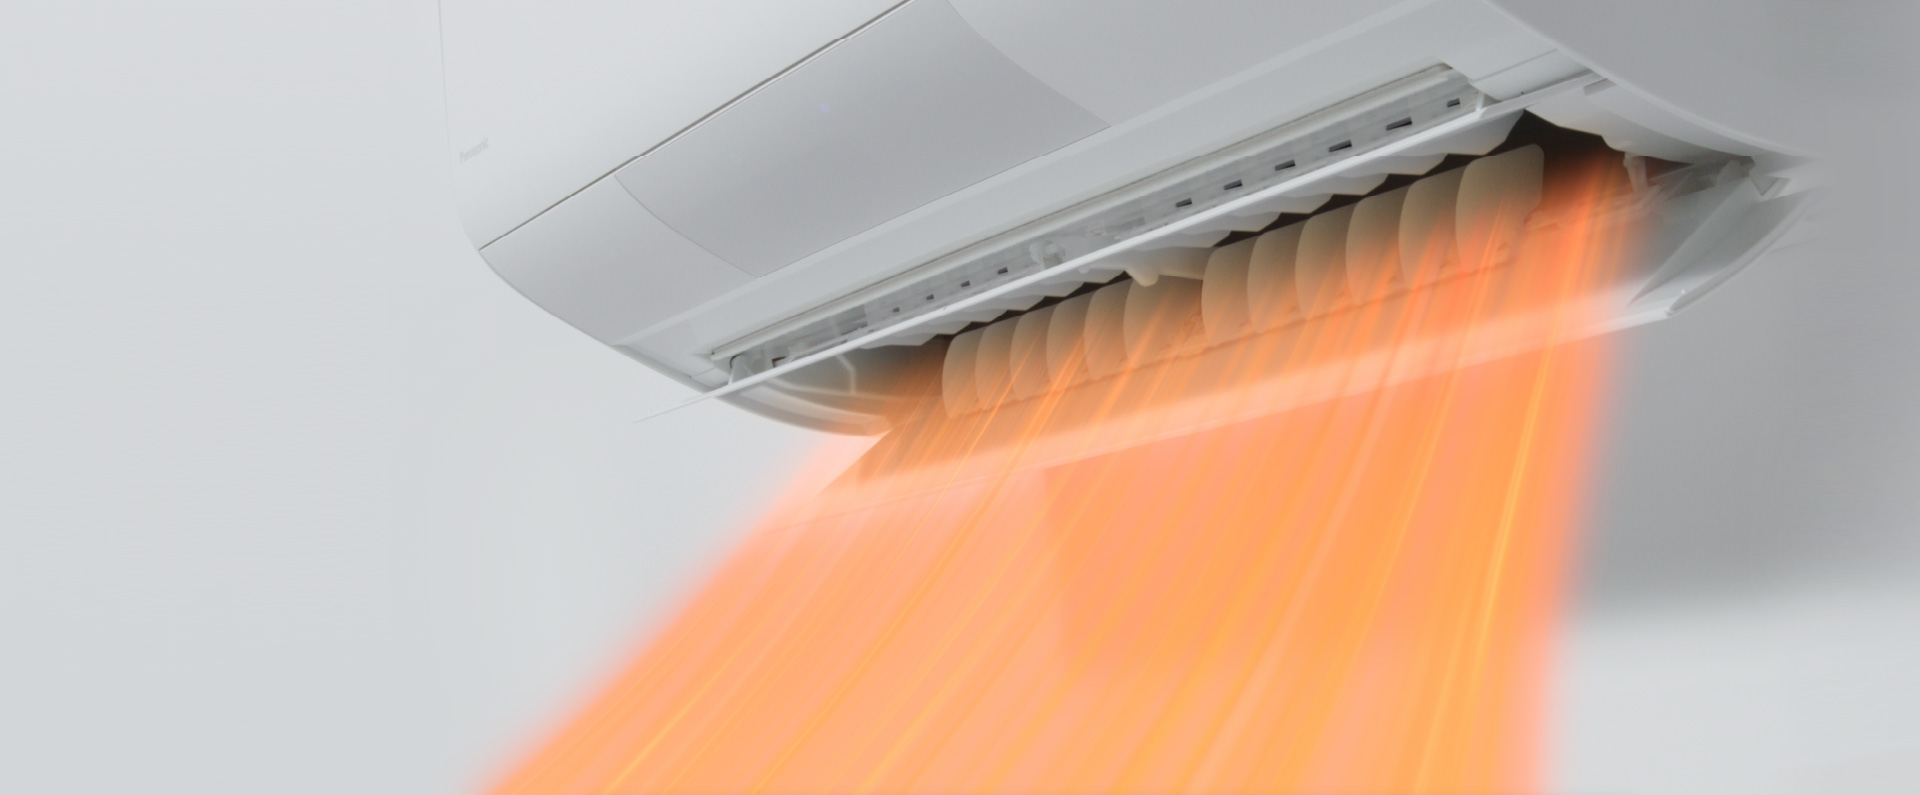 エアコンが暖房の気流を吹き出している画像です